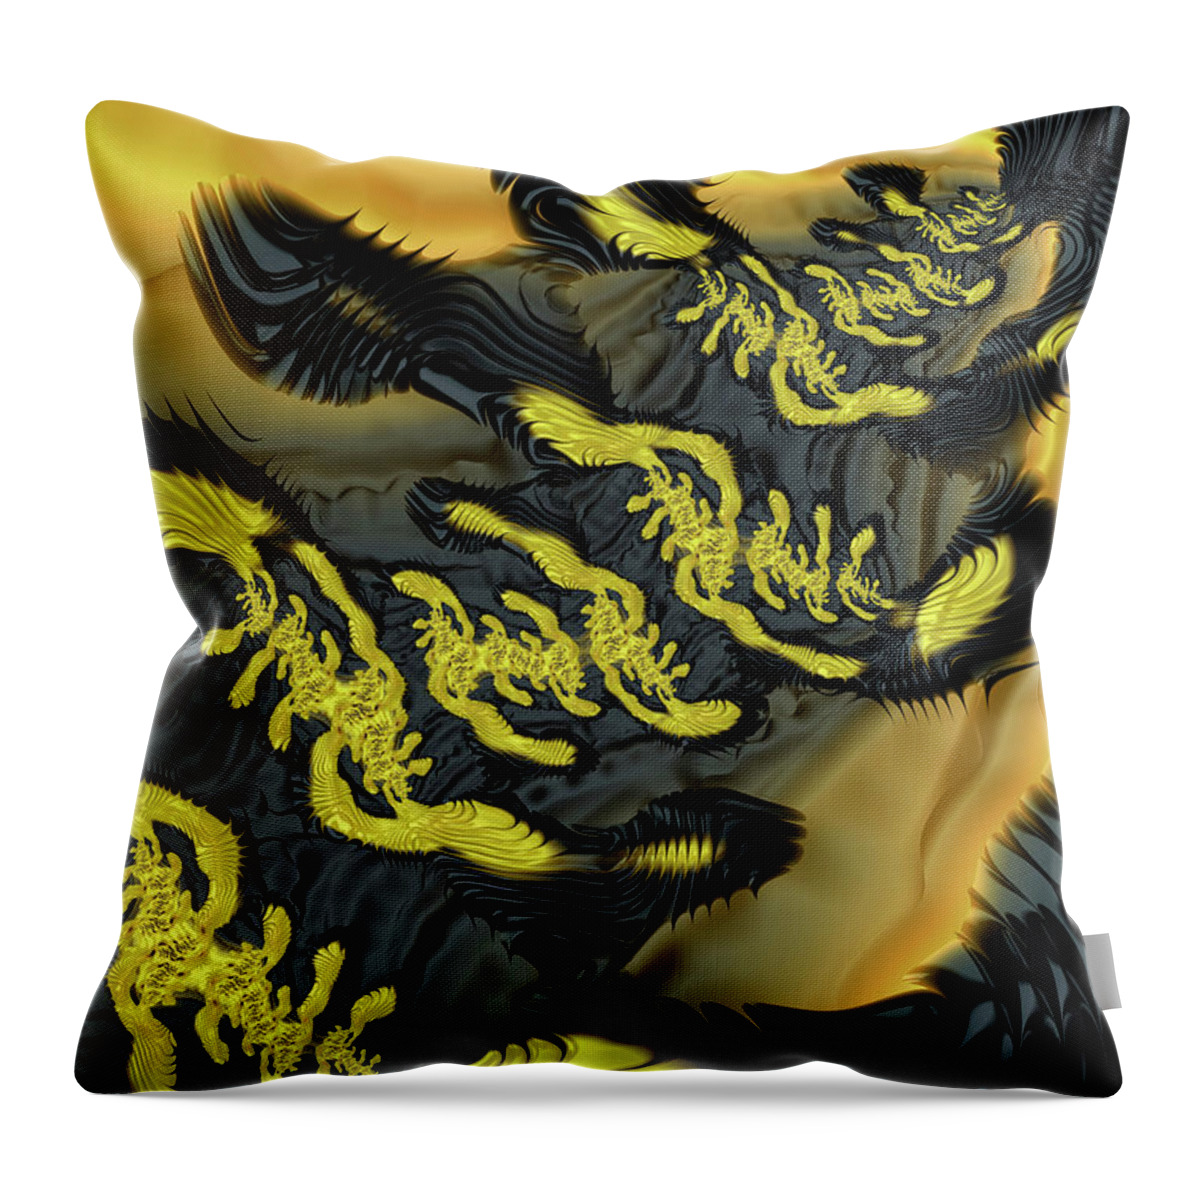 Fractal Throw Pillow featuring the digital art Alien Runes by Elisabeth Lucas